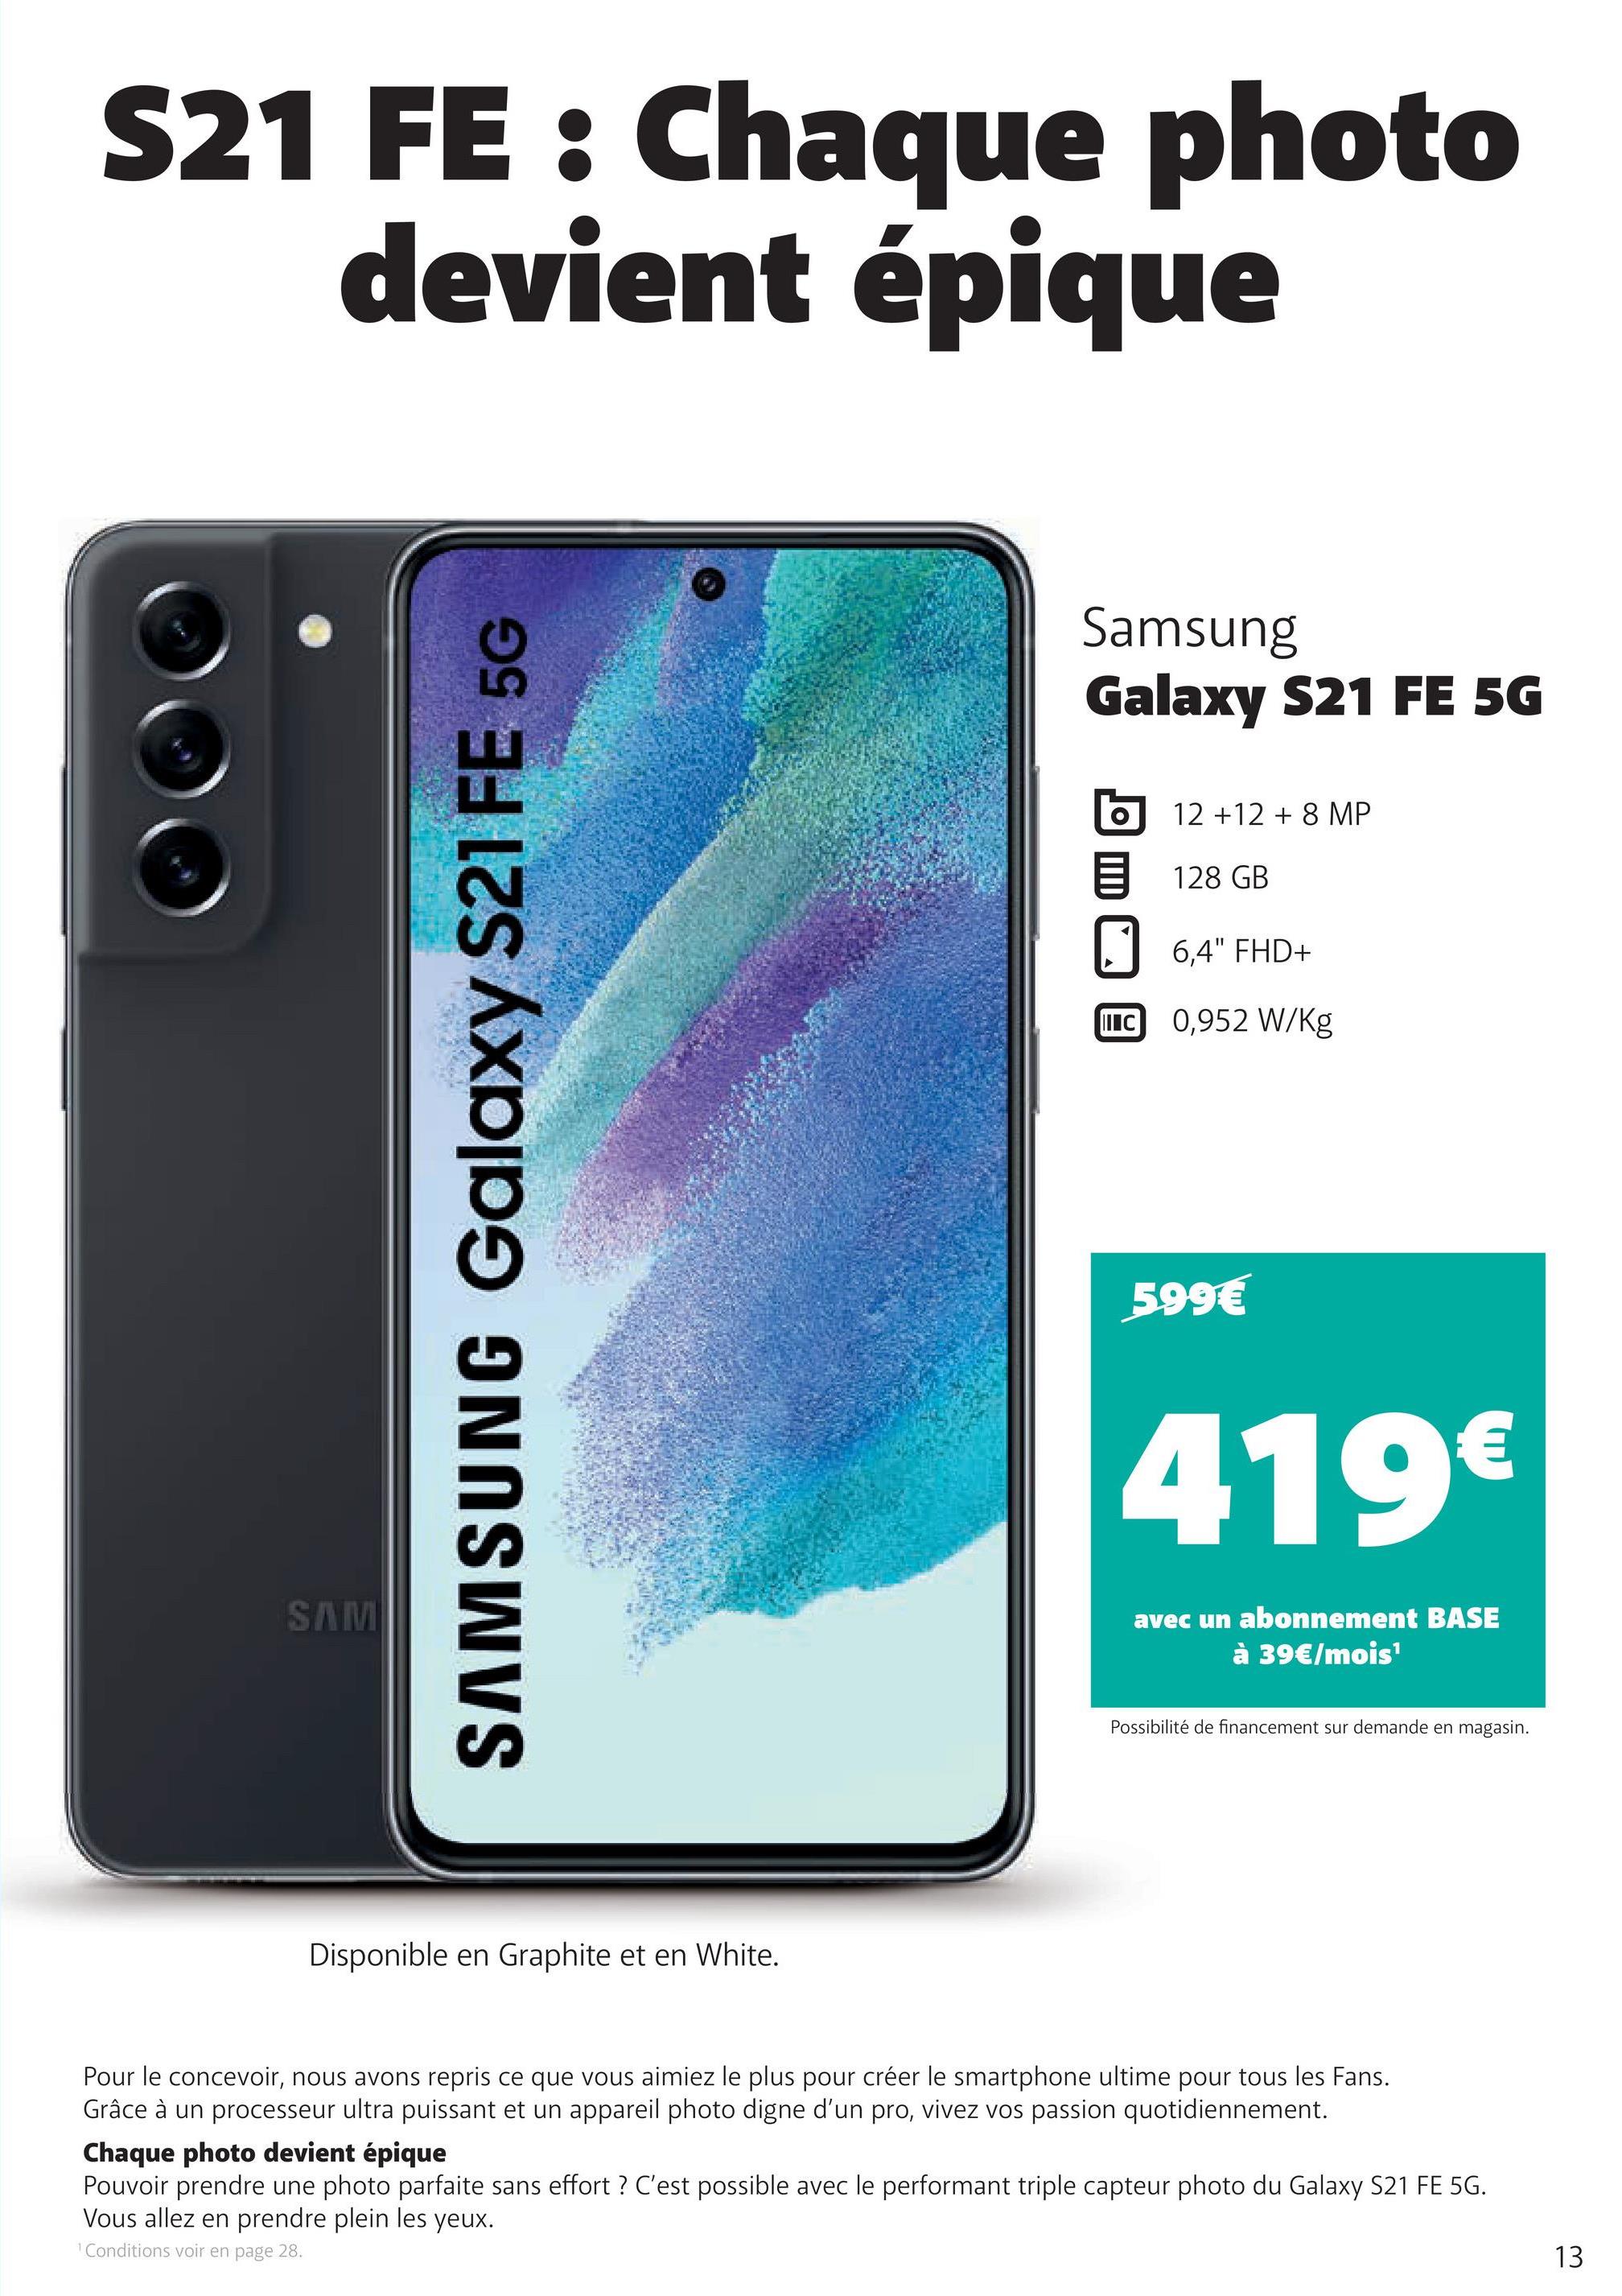 S21 FE : Chaque photo
devient épique
SAM
SAMSUNG Galaxy S21 FE 5G
Disponible en Graphite et en White.
Samsung
Galaxy S21 FE 5G
12 +12 + 8 MP
128 GB
6,4" FHD+
IIIC 0,952 W/kg
599€
419€
avec un abonnement BASE
à 39€/mois¹
Possibilité de financement sur demande en magasin.
Pour le concevoir, nous avons repris ce que vous aimiez le plus pour créer le smartphone ultime pour tous les Fans.
Grâce à un processeur ultra puissant et un appareil photo digne d'un pro, vivez vos passion quotidiennement.
Chaque photo devient épique
Pouvoir prendre une photo parfaite sans effort ? C'est possible avec le performant triple capteur photo du Galaxy S21 FE 5G.
Vous allez en prendre plein les yeux.
¹ Conditions voir en page 28.
13